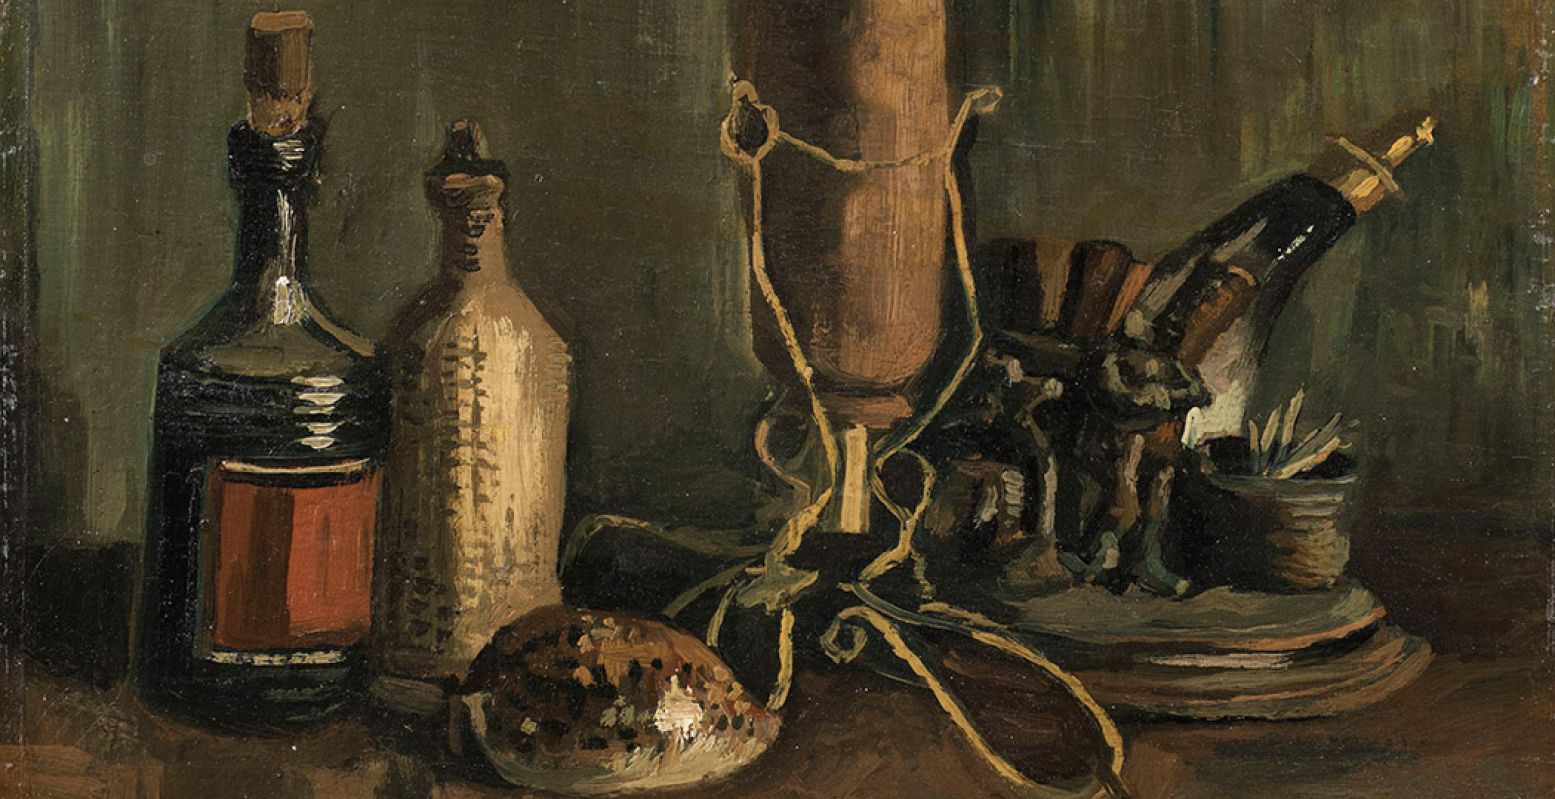 Uitsnede uit het werk van Van Gogh dat Het Noordbrabants Museum het meest recent in eigendom kreeg en dat nu voor het eerst te zien is in het museum: herfst 1884, olieverf op doek op paneel, 31,8 x 41,3 cm. Foto: Het Noordbrabants Museum © Marjo van de Peppel-Kool